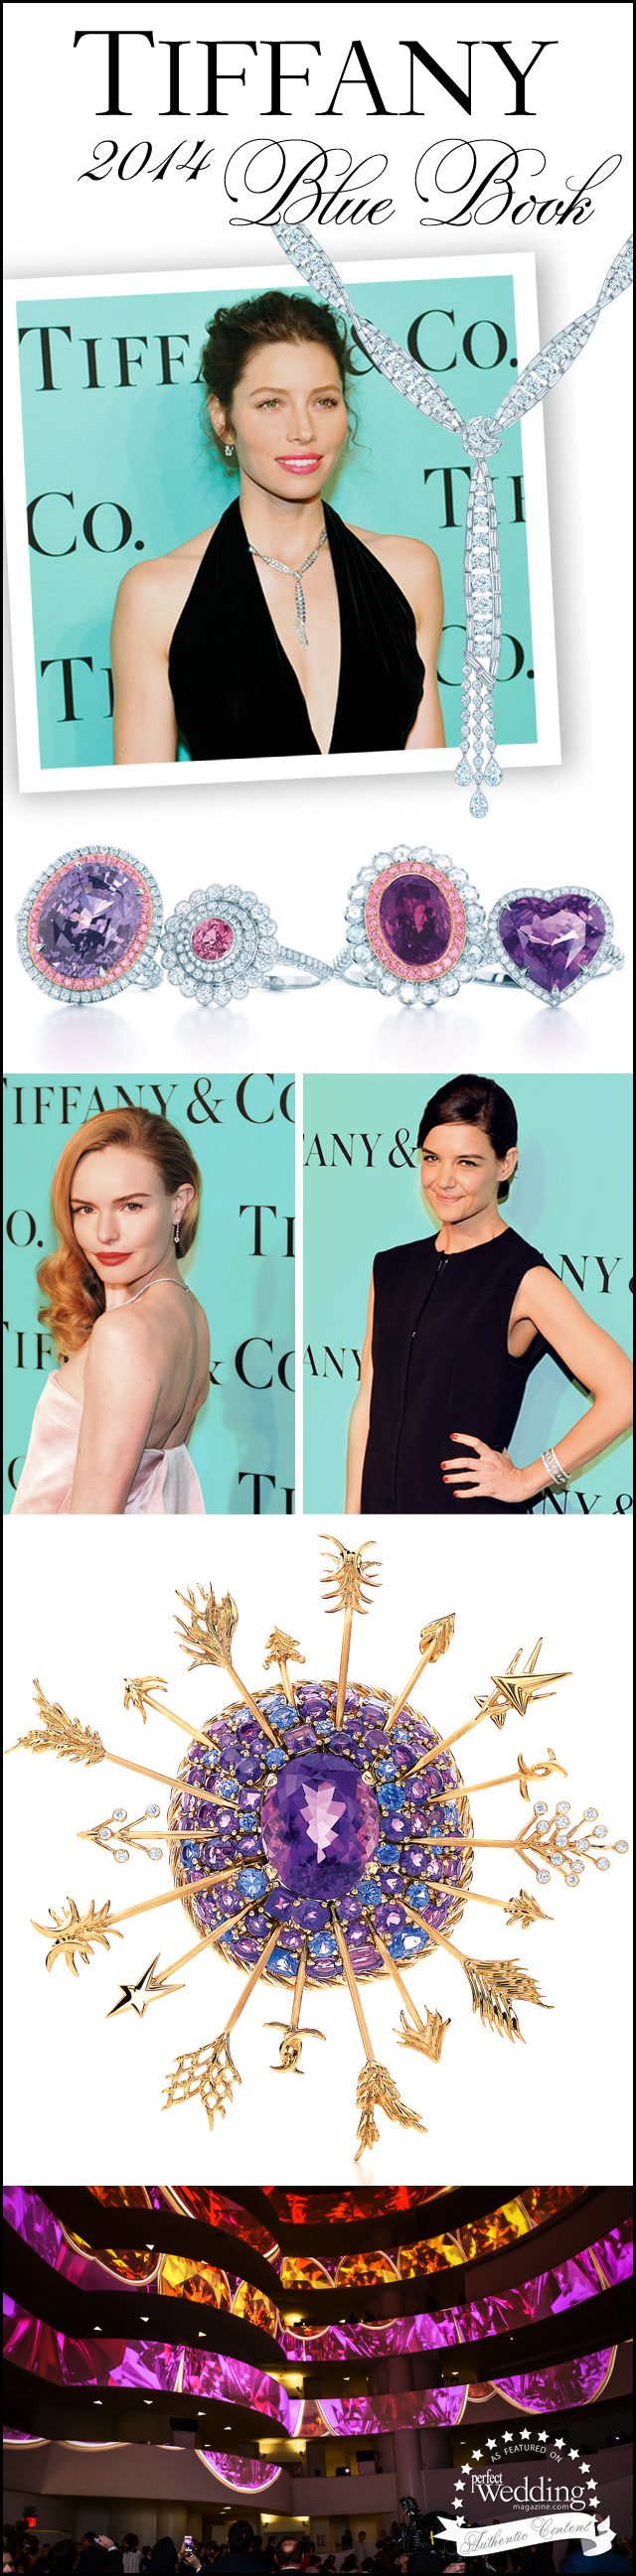 Tiffany & Co., Tiffany 2014 Blue Book, Tiffany Jewellery, Perfect Wedding Magazine. Perfect wedding magazine blog